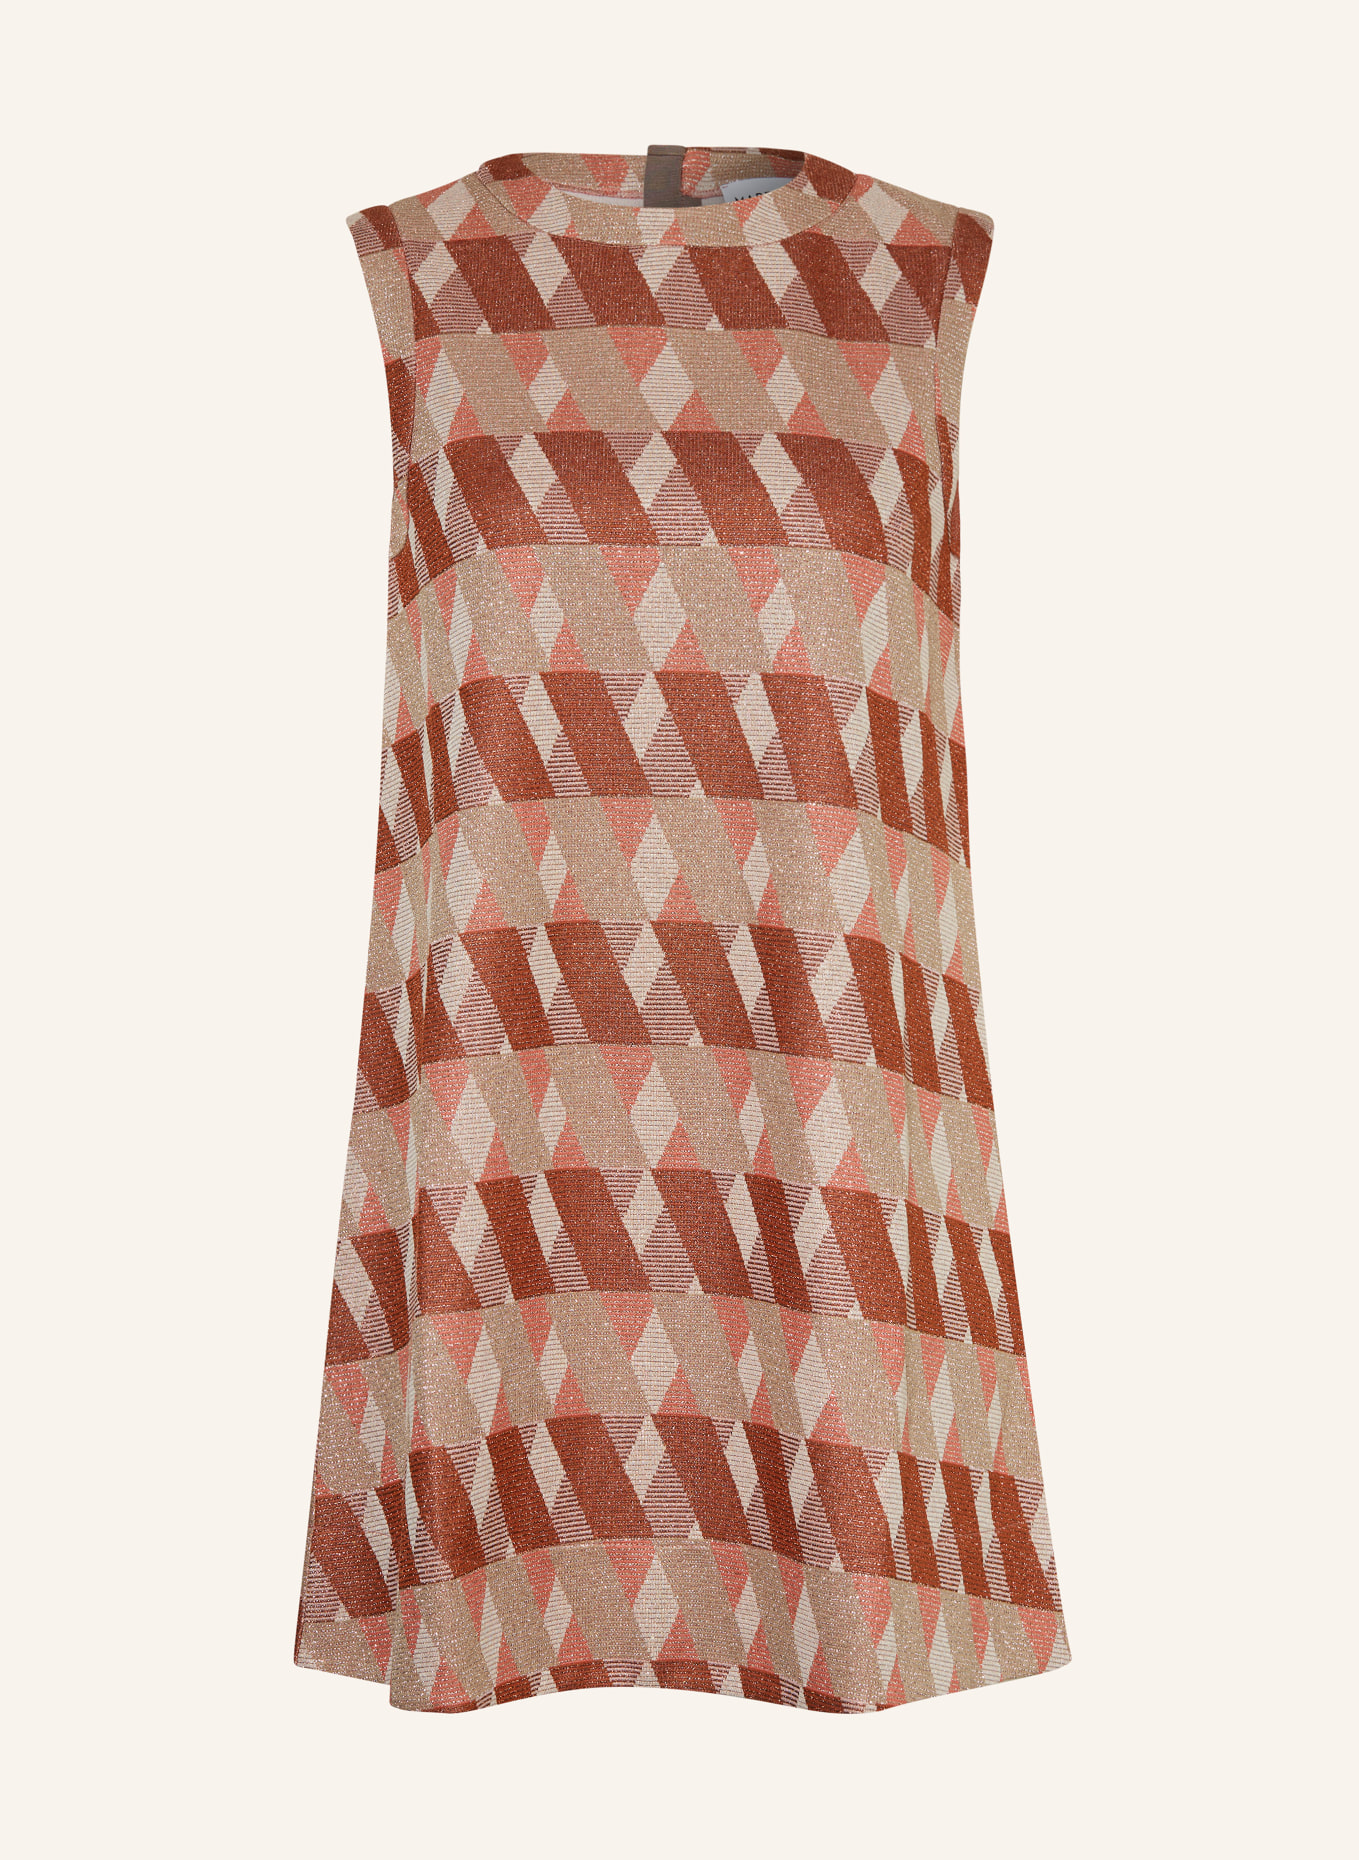 MARELLA Kleid mit Glitzergarn, Farbe: BEIGE/ COGNAC/ ROSÉ (Bild 1)